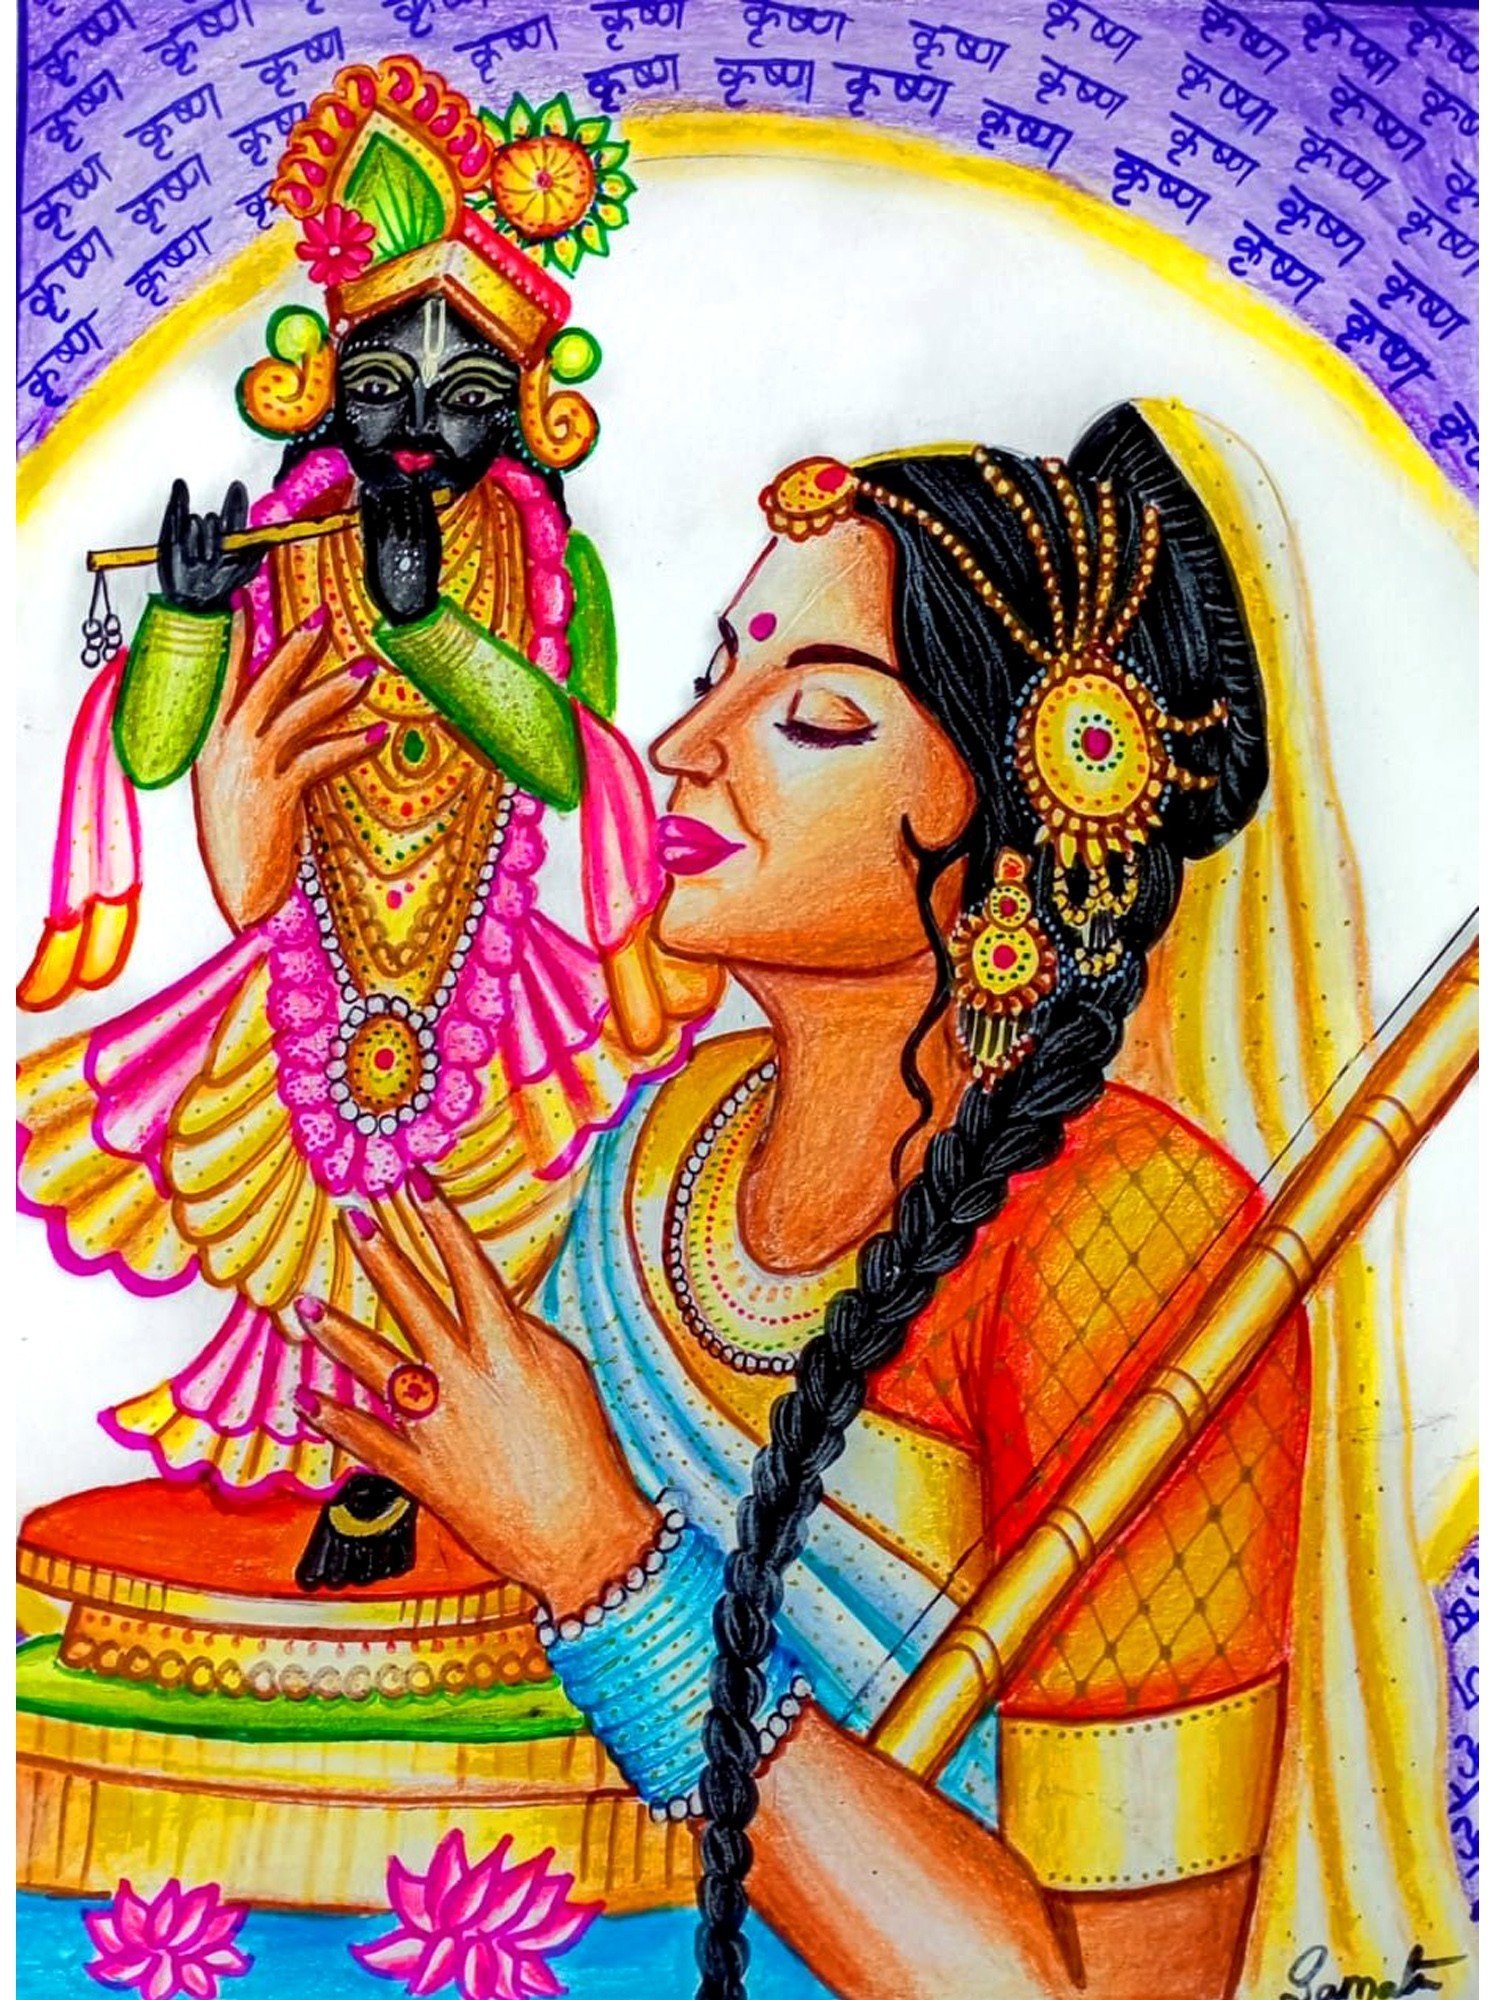 meera bai drawing with watercolor || lord krishna drawing || radha Krishna  || krishna vani - YouTube